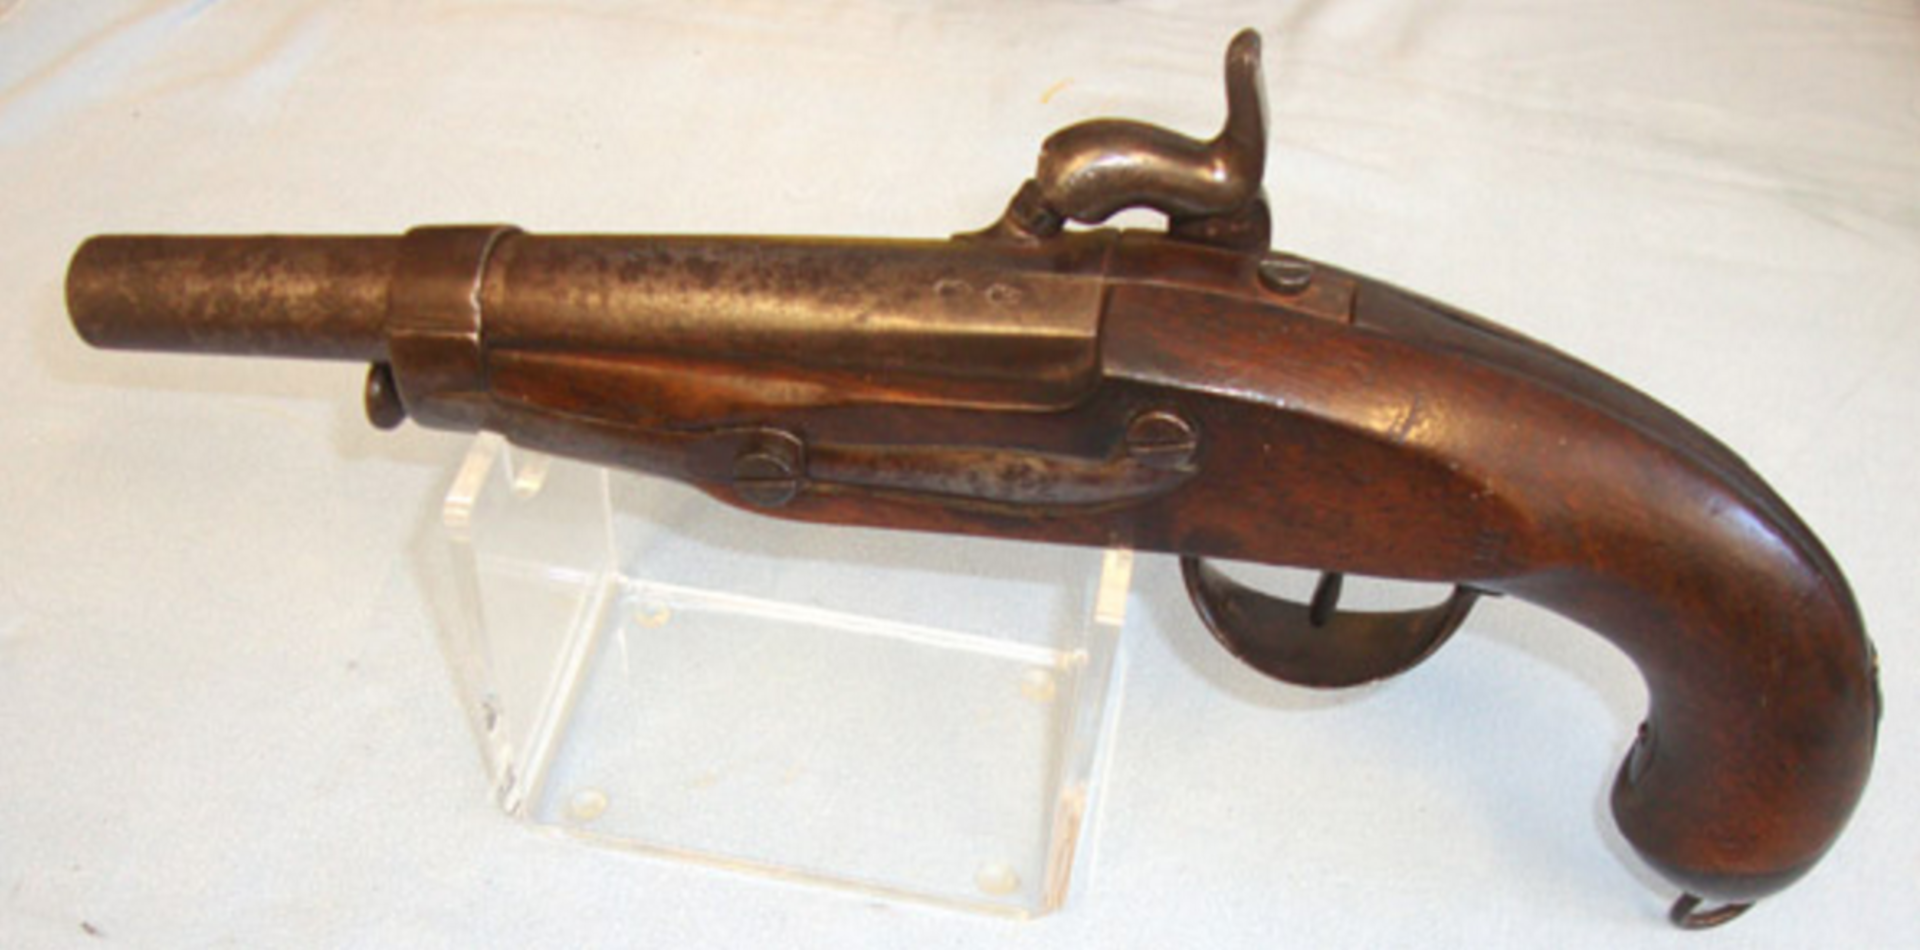 Victorian Era French Gendarmarie .650” Carbine Bore Percussion Pistol - Image 3 of 3